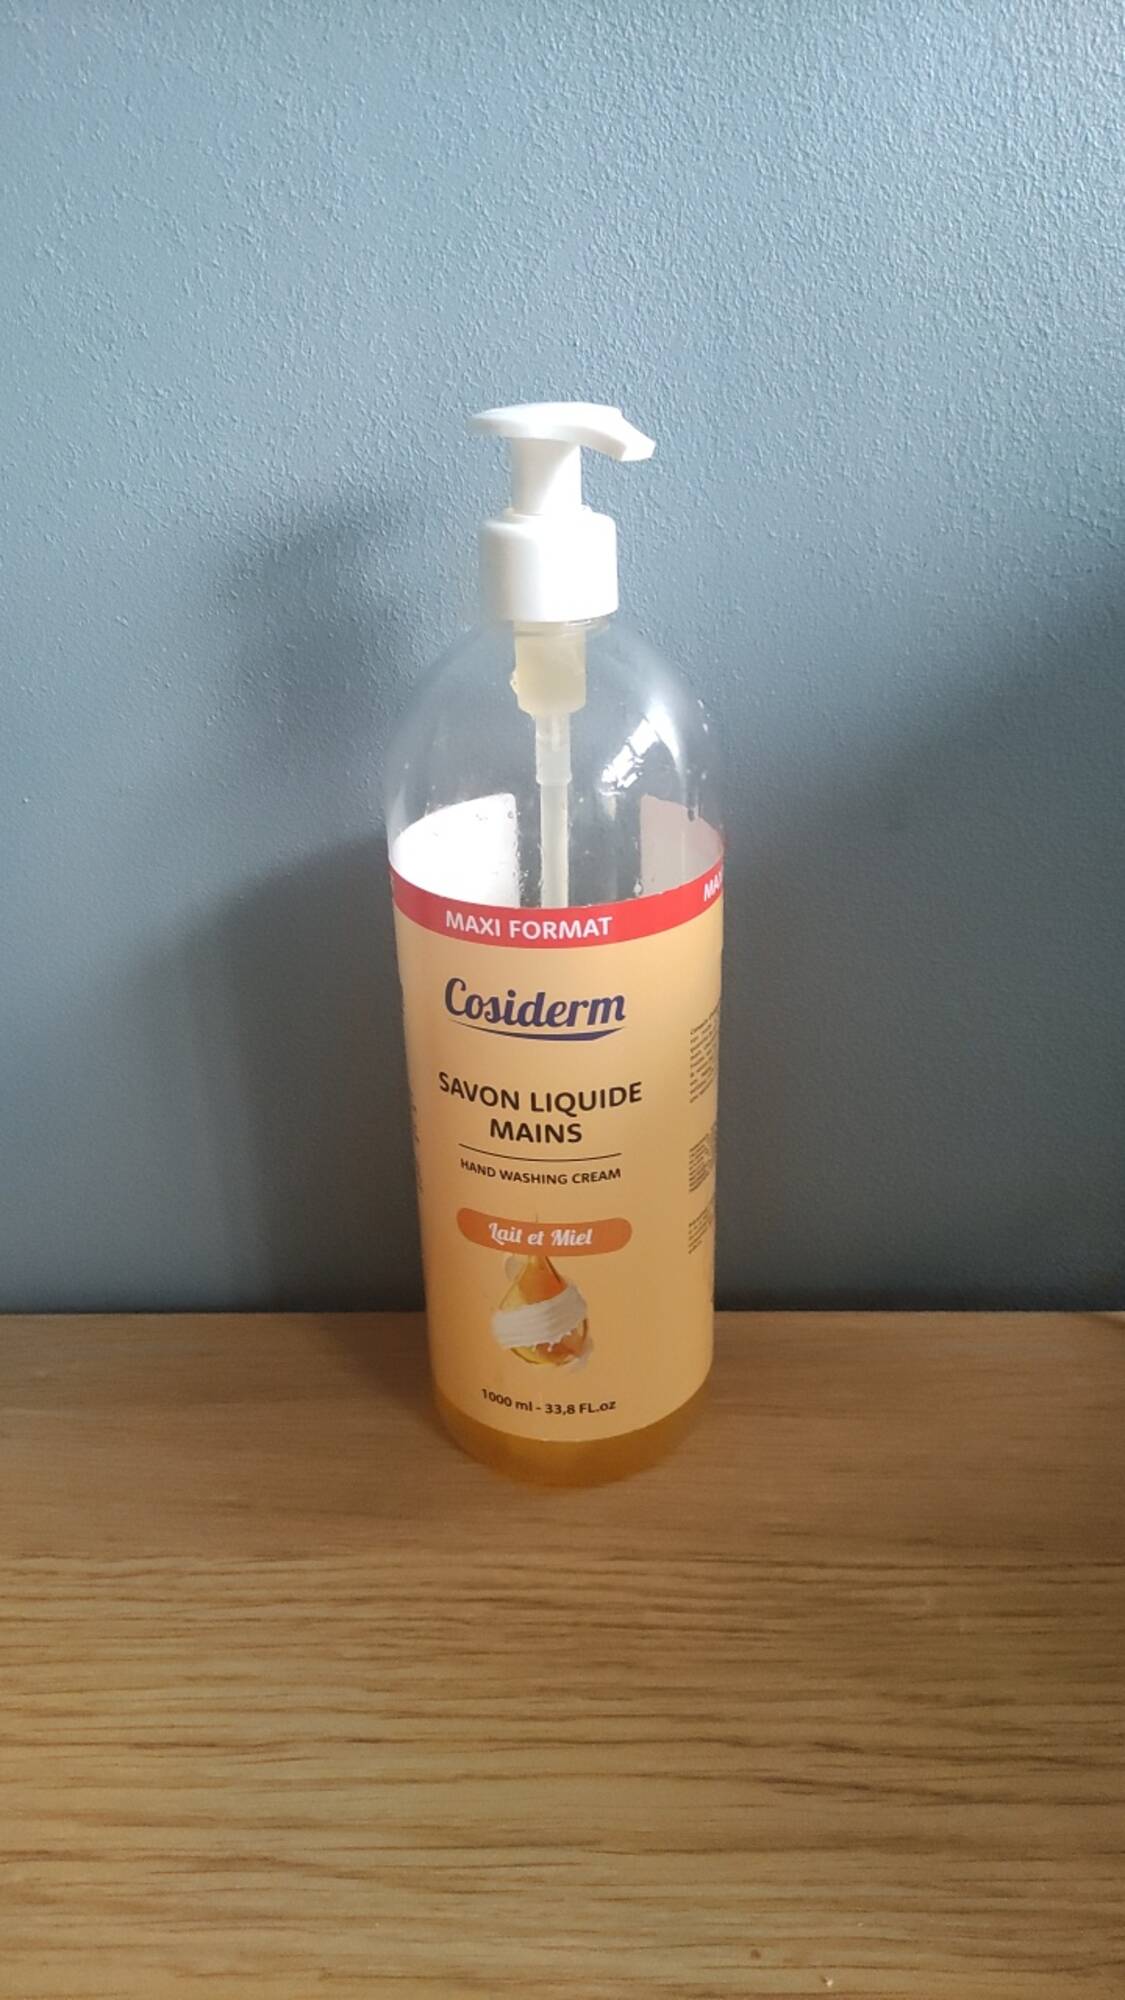 COSIDERM - Savon liquide mains lait et miel